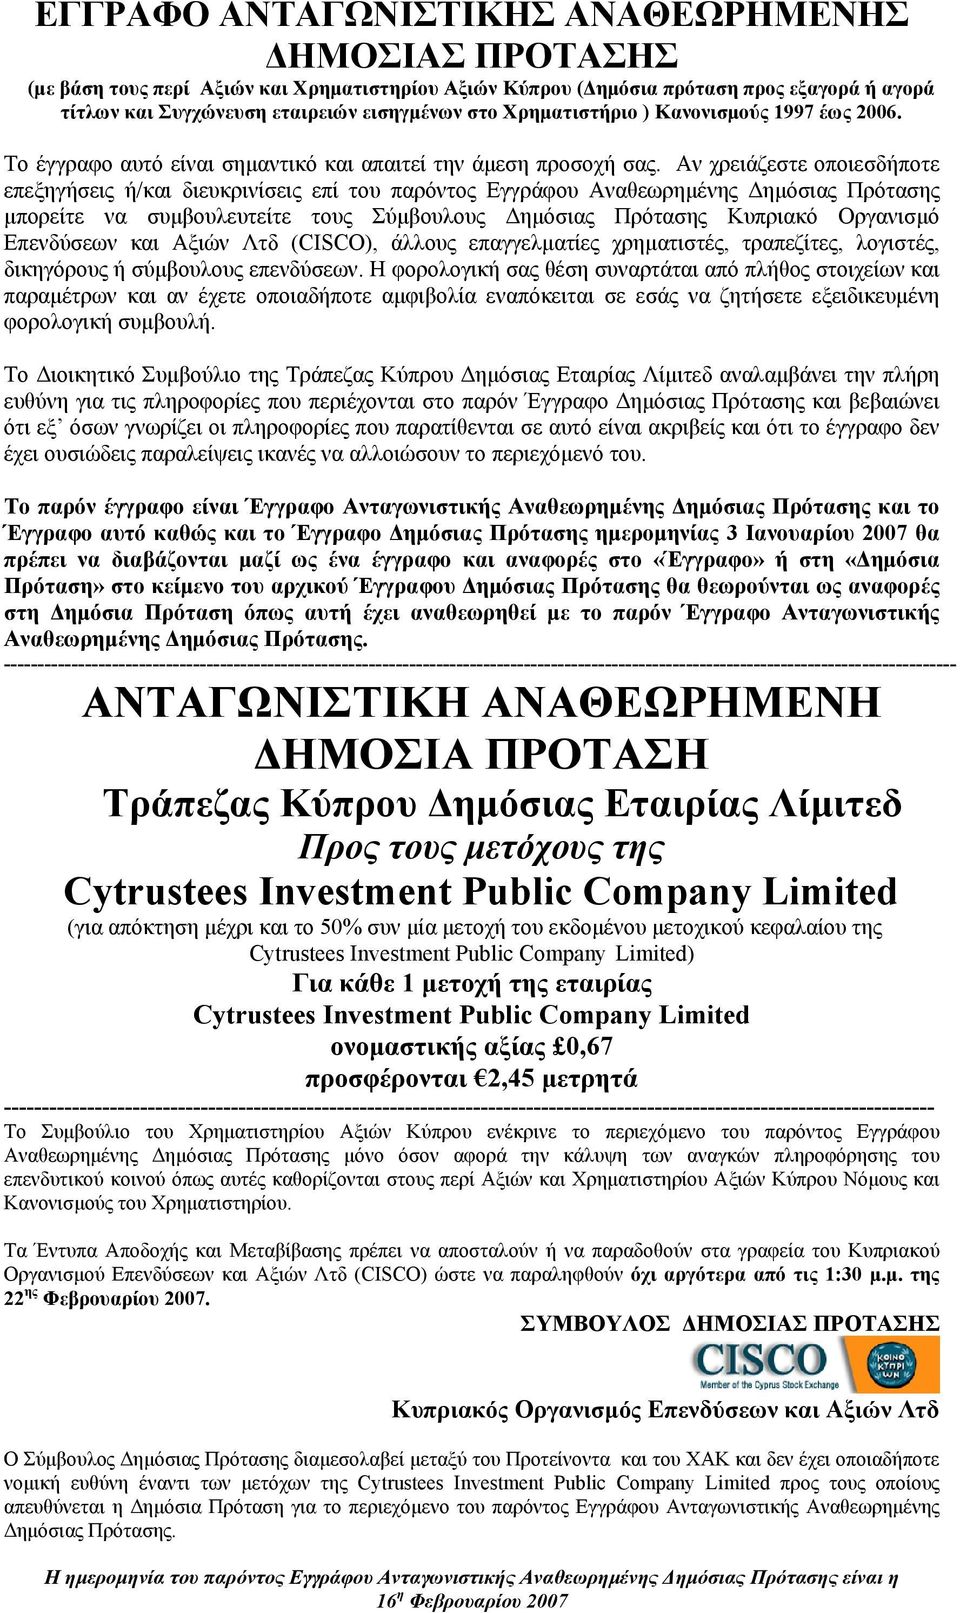 Αν χρειάζεστε οποιεσδήποτε επεξηγήσεις ή/και διευκρινίσεις επί του παρόντος Εγγράφου Αναθεωρηµένης ηµόσιας Πρότασης µπορείτε να συµβουλευτείτε τους Σύµβουλους ηµόσιας Πρότασης Κυπριακό Οργανισµό